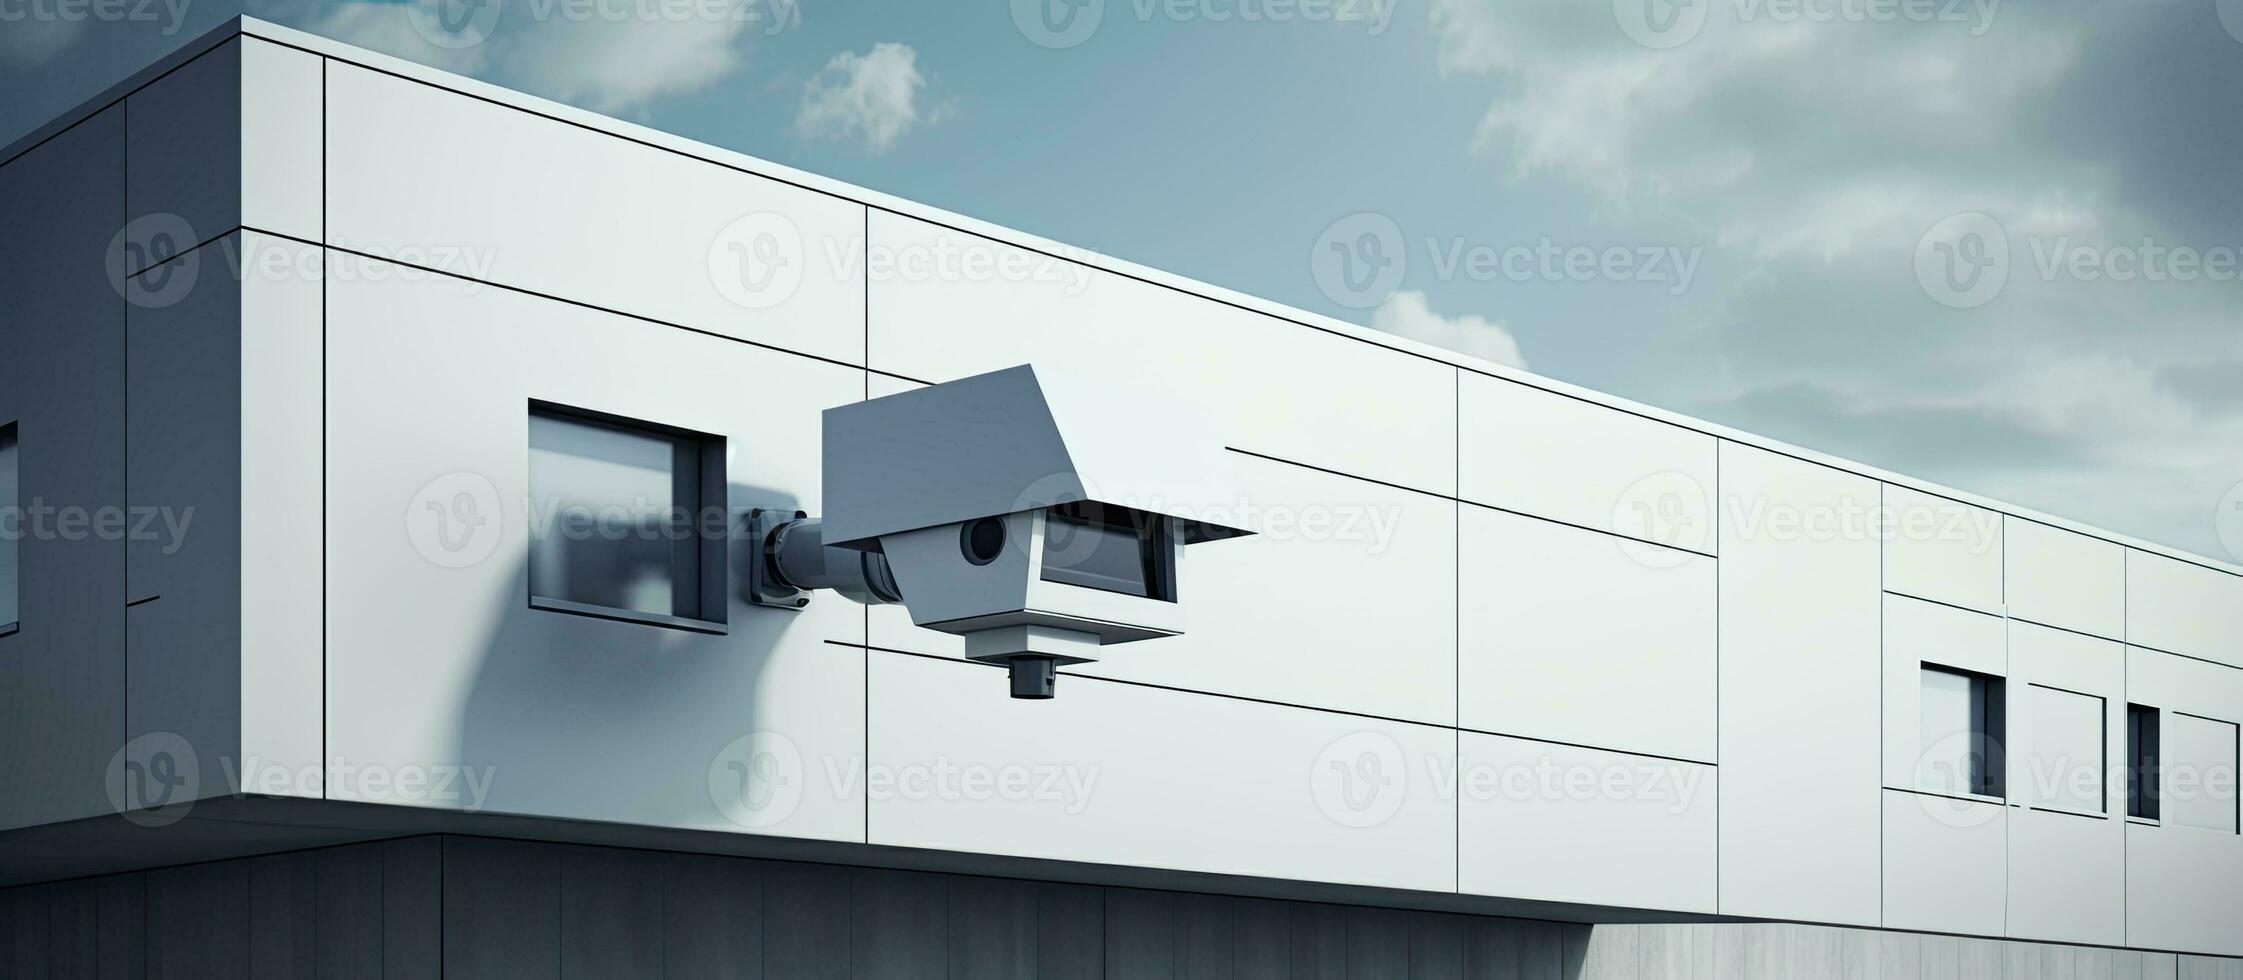 uma contemporâneo construção com avançado segurança características, exibindo uma segurança Câmera. a conceito foto